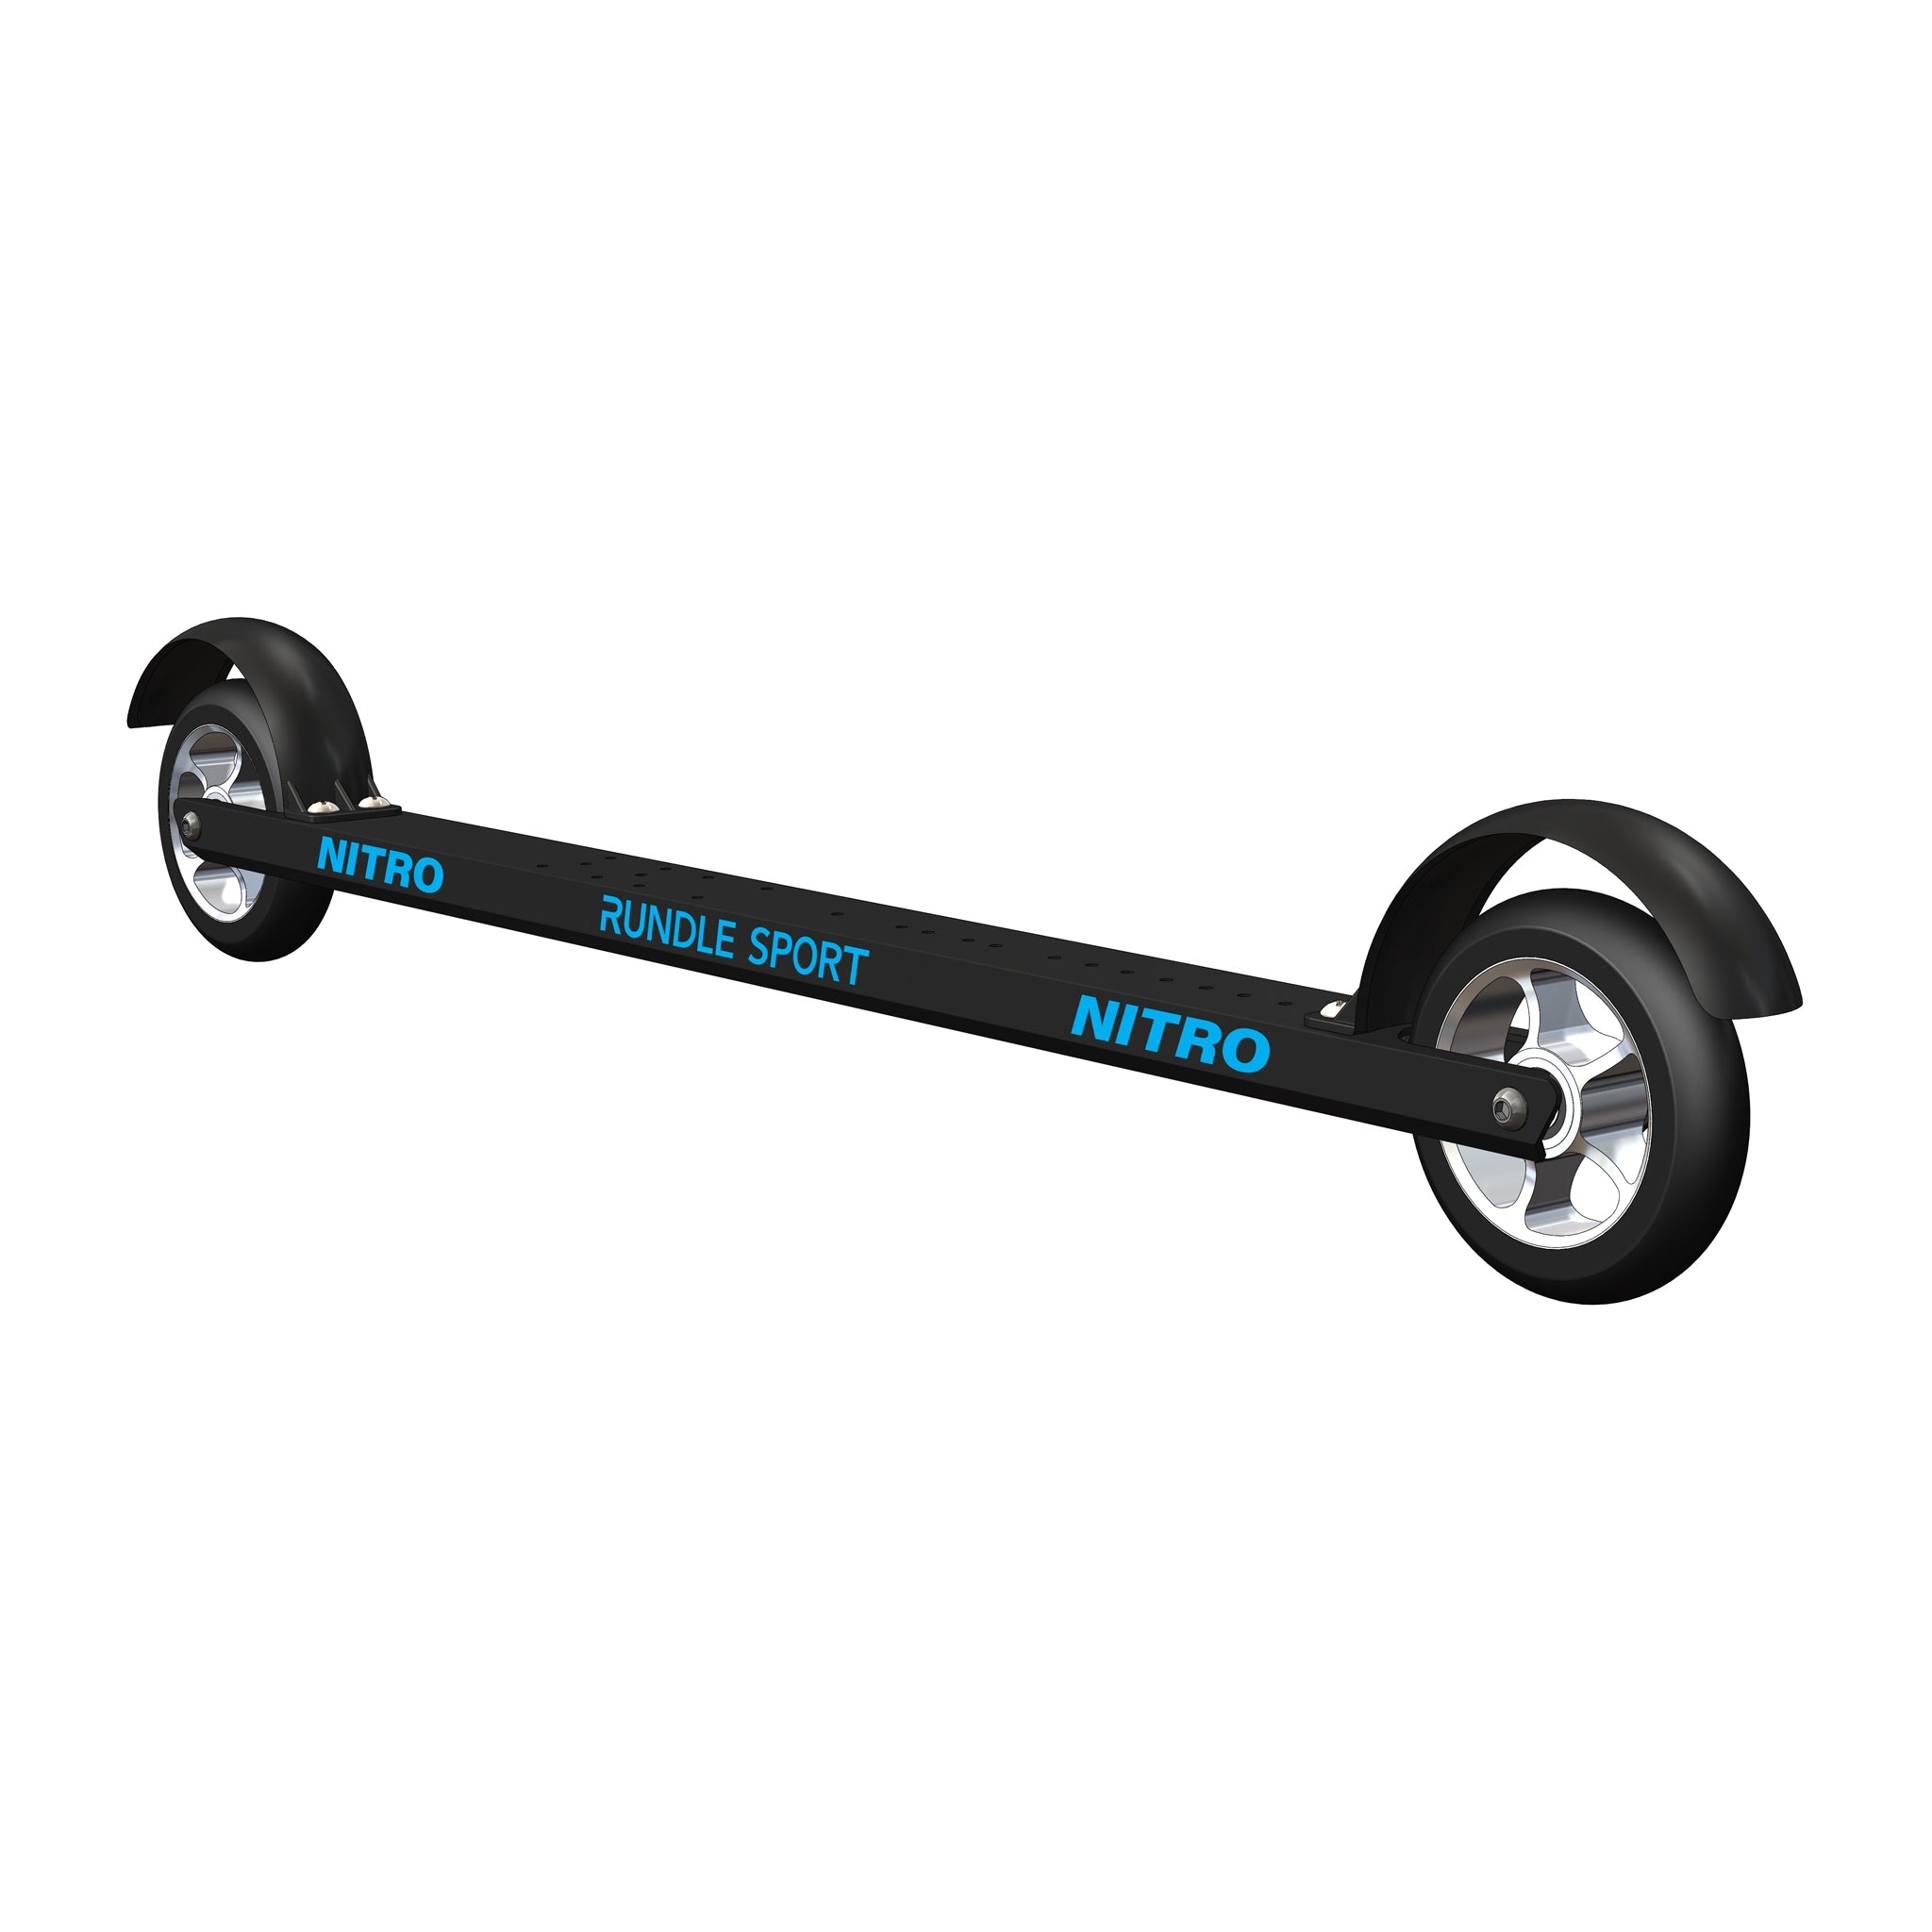 Rundle Sport - Nitro Skate Roller Skis